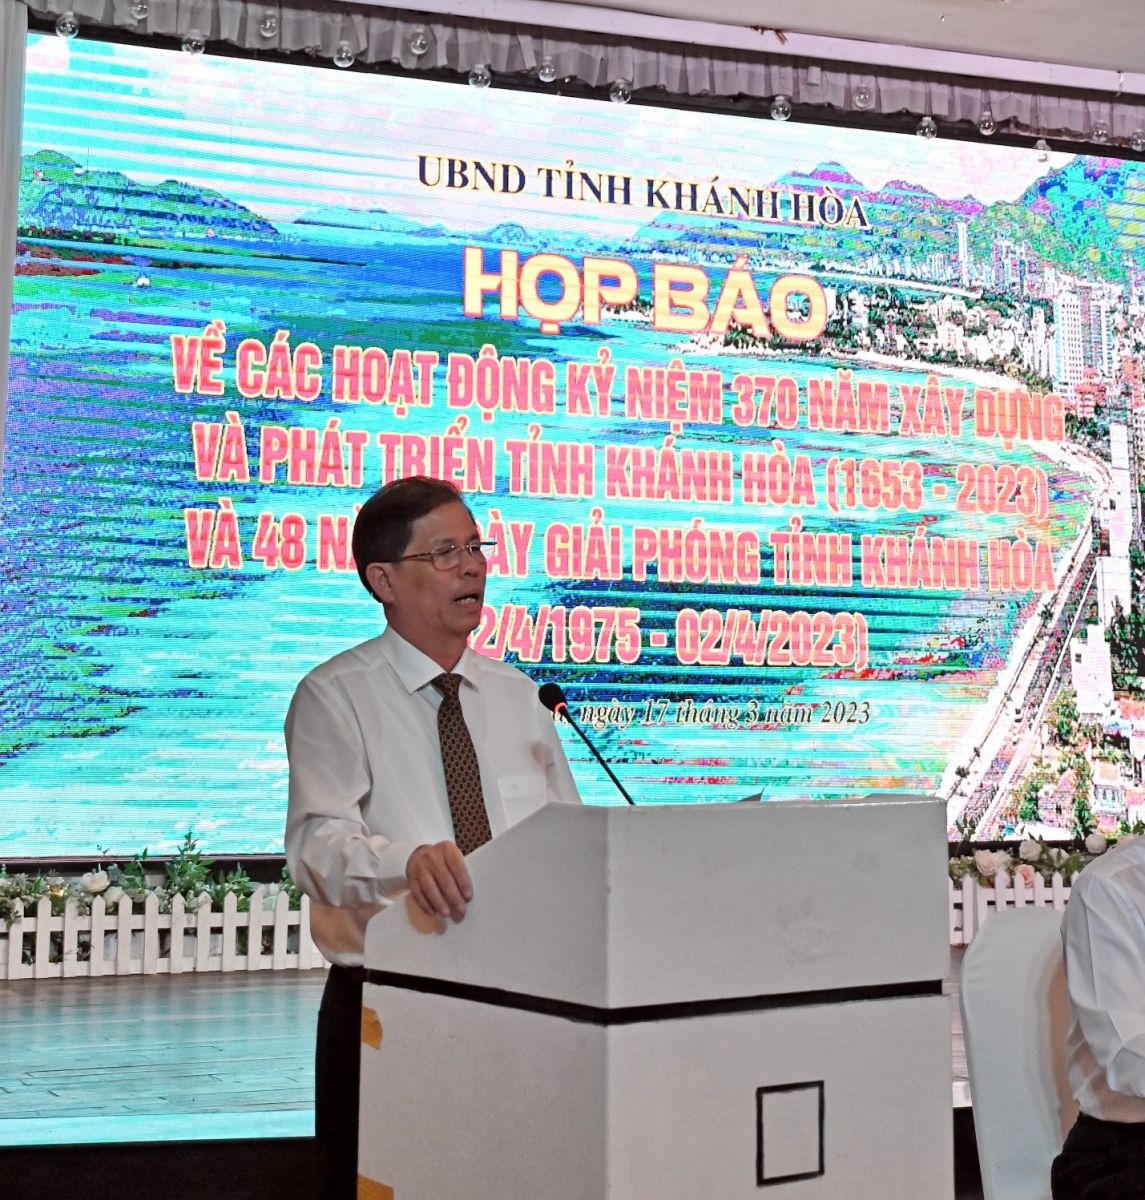 Ông Nguyễn Tấn Tuân, Chủ Tịch UBND Tỉnh Khánh Hòa phát biểu  tại Họp báo